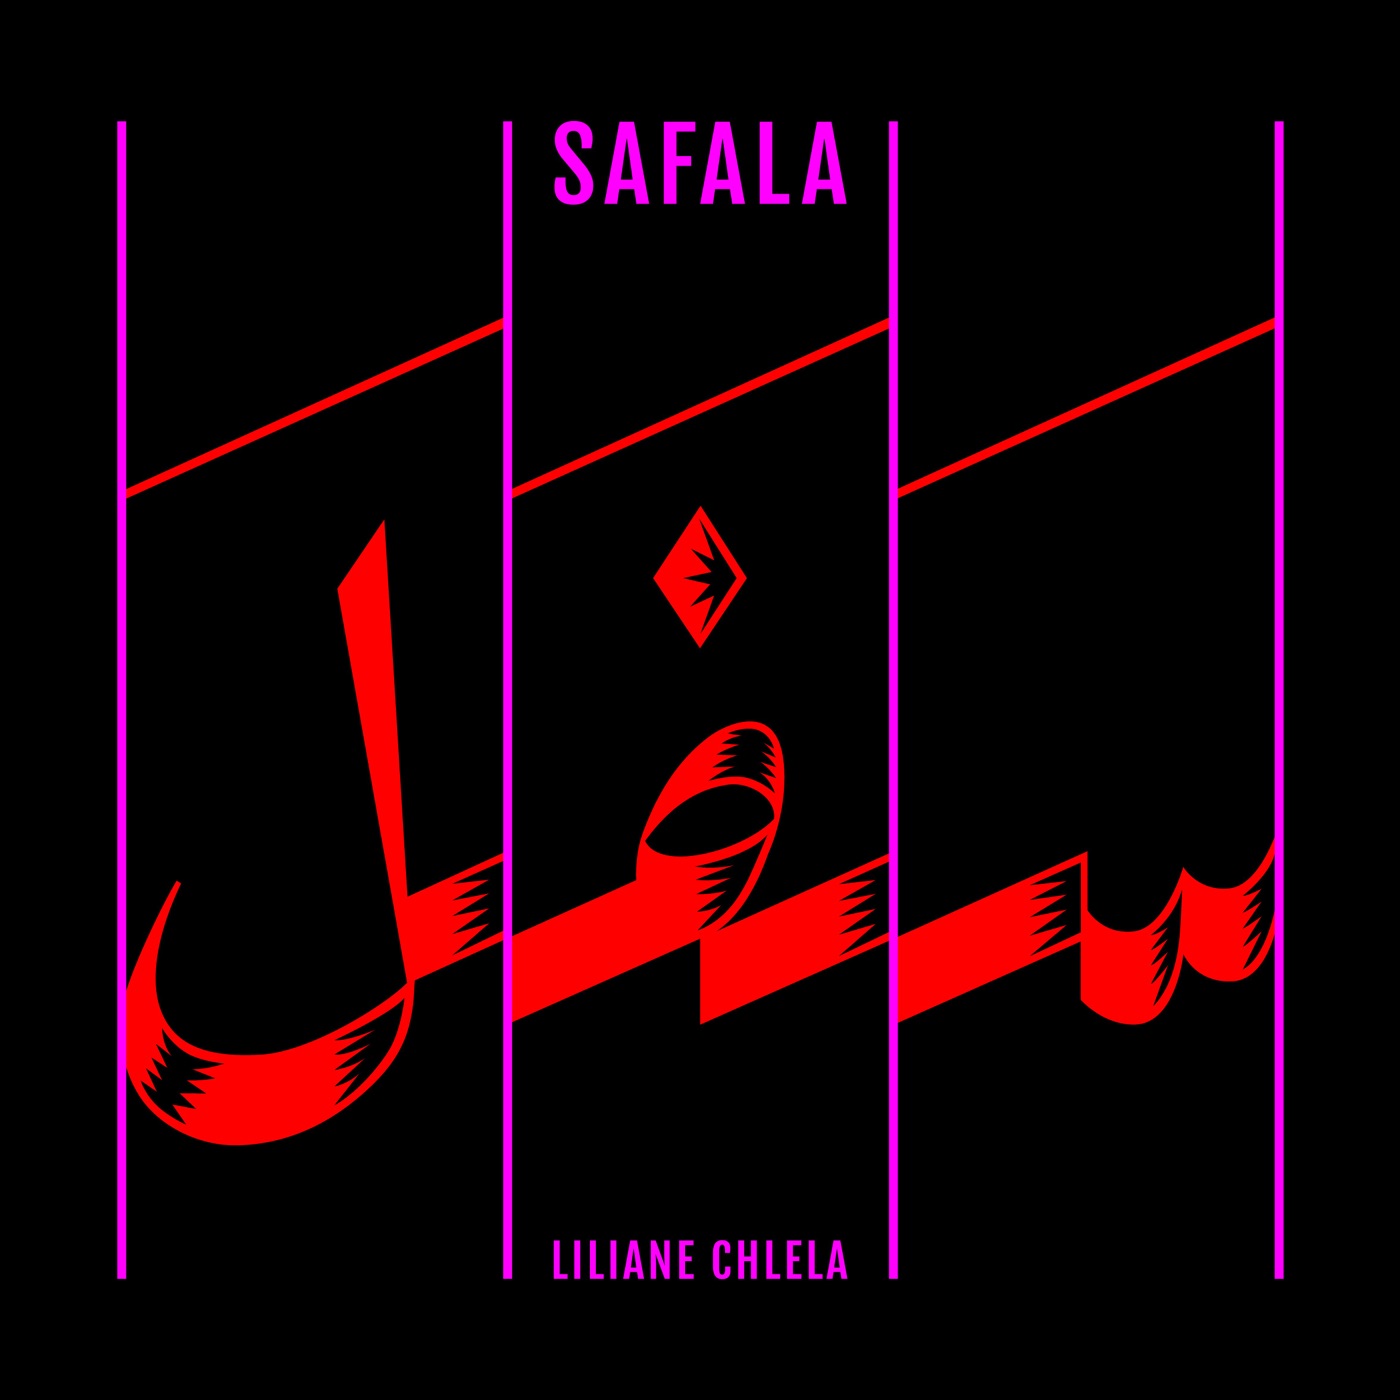 Safala by Liliane Chlela